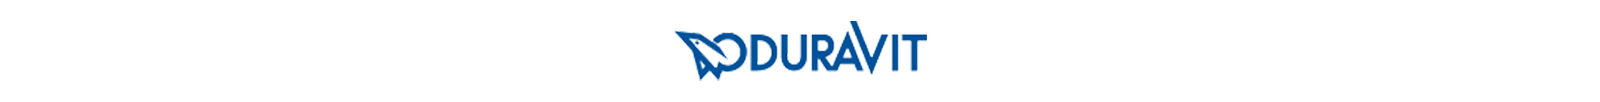 Logo-Duravit-1600x102-trasp.png